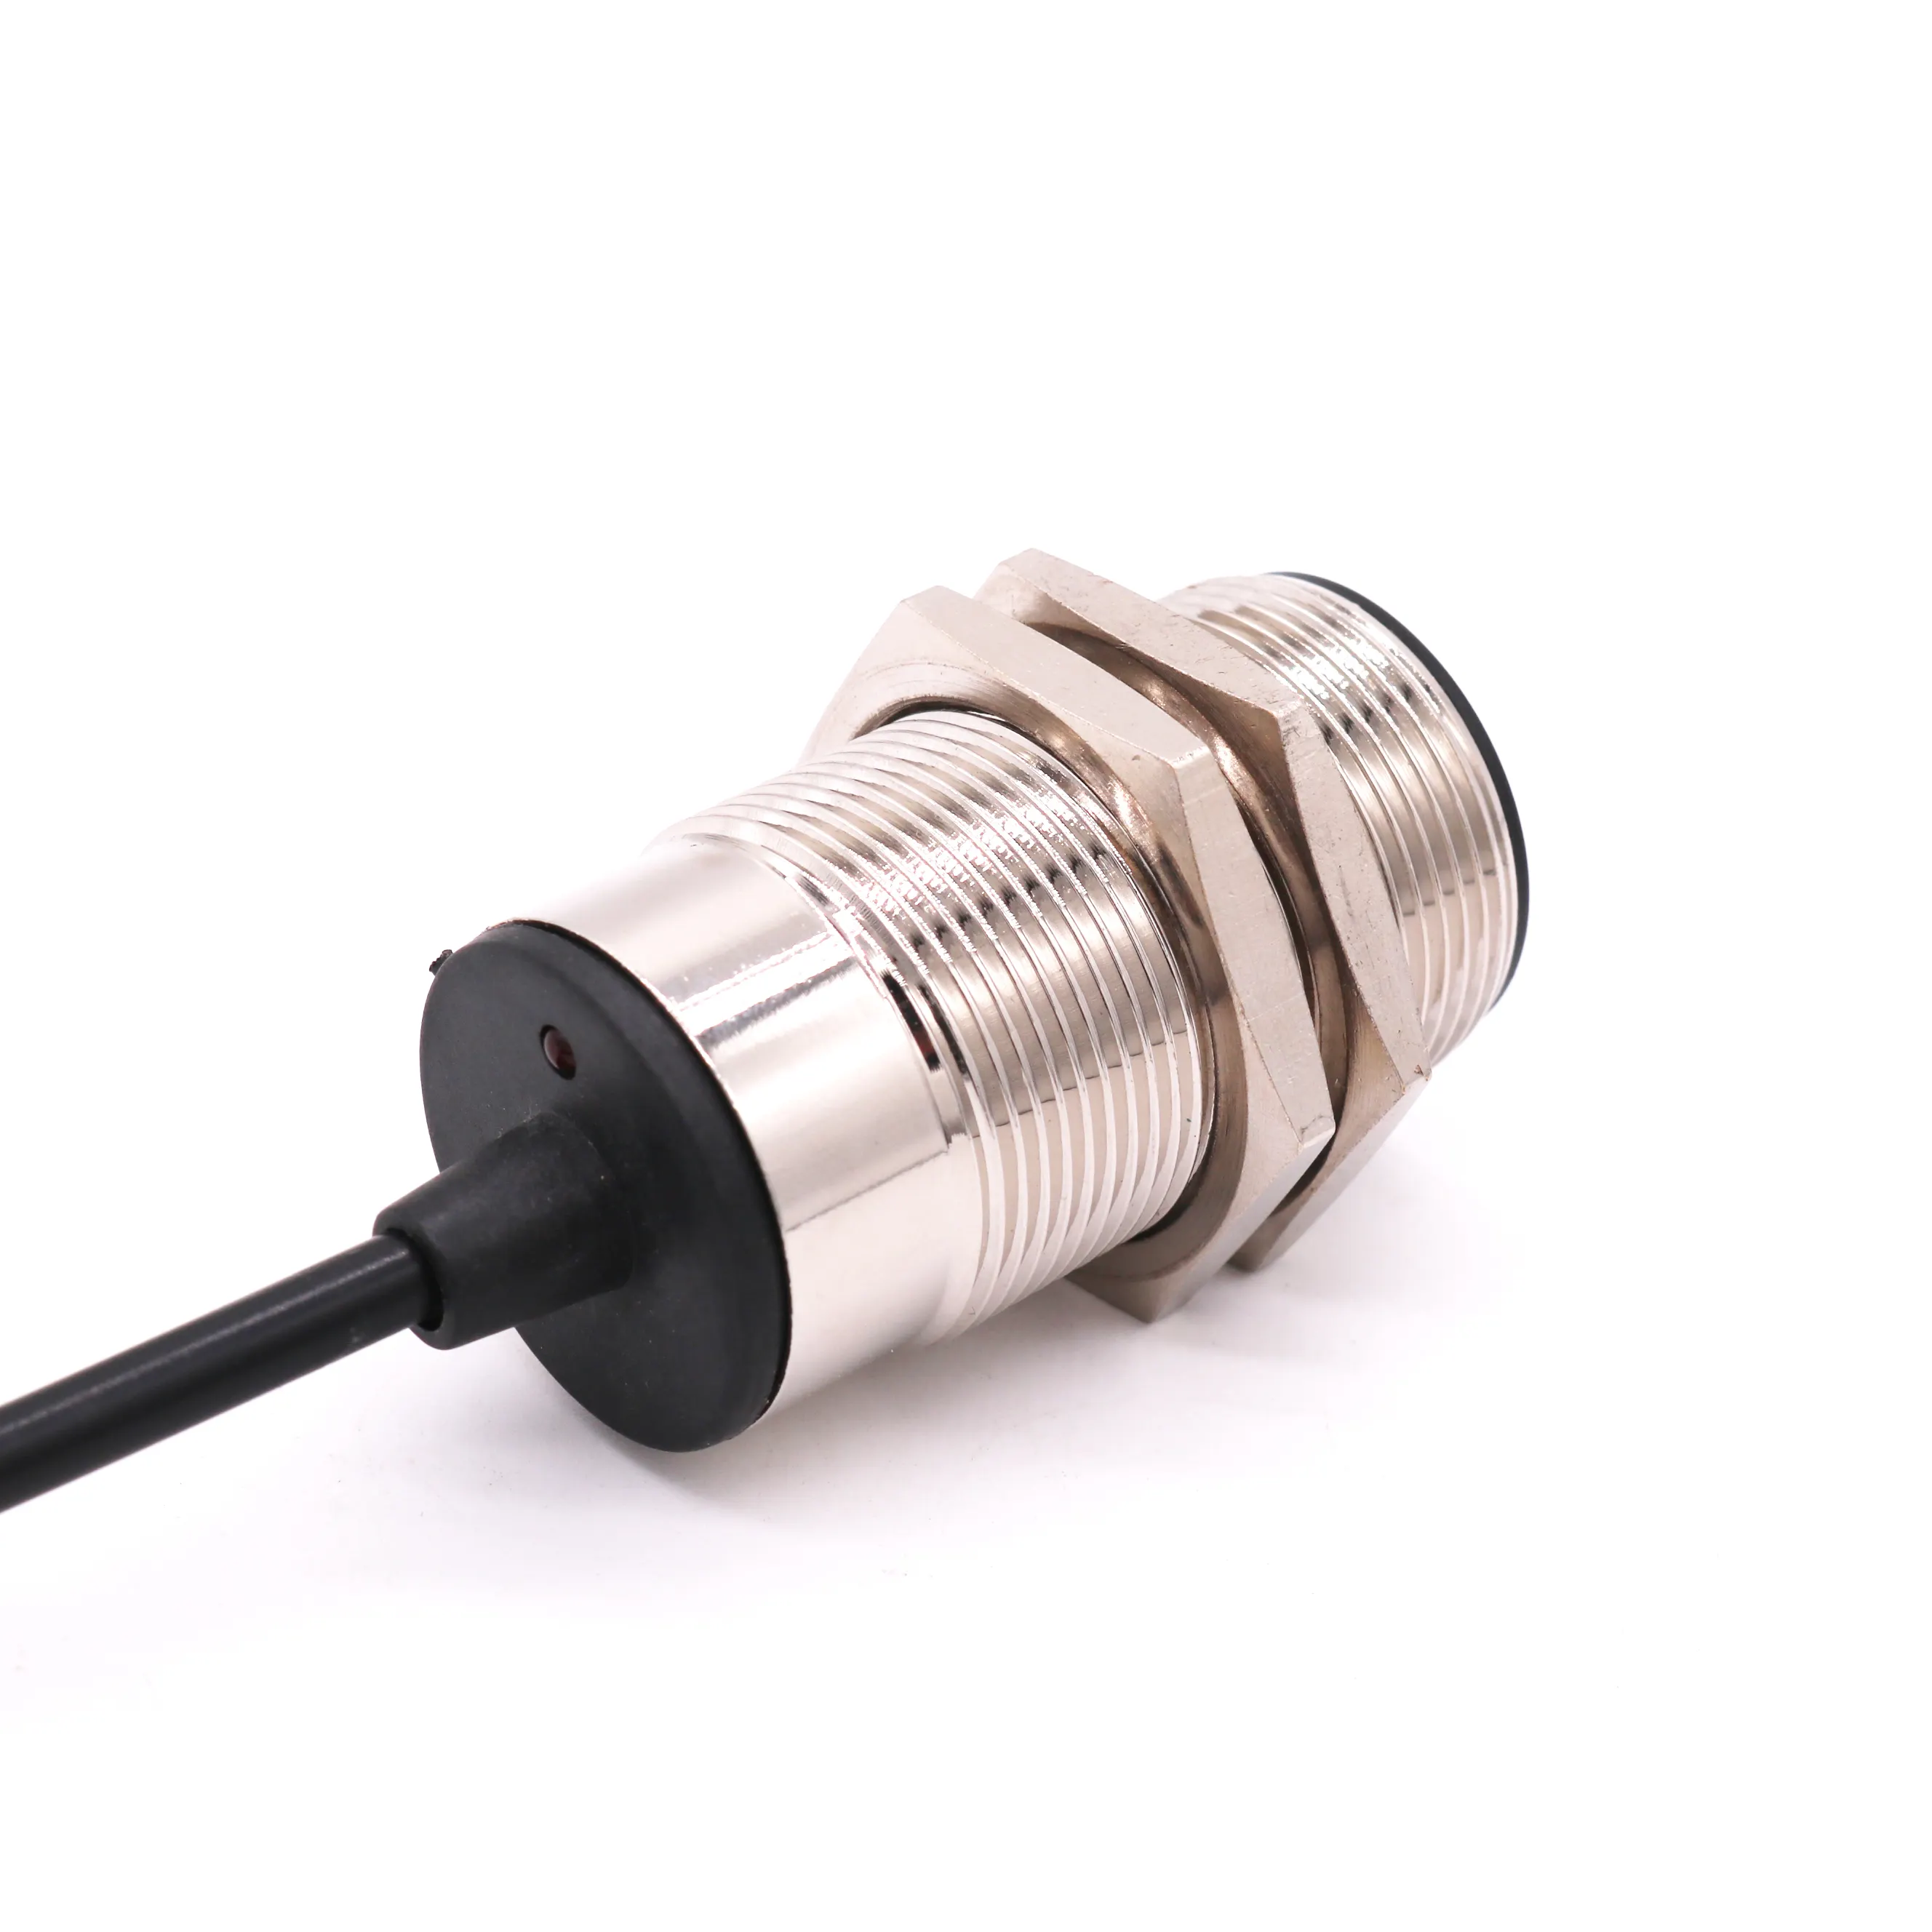 Analog çıkış sensörü M30 çıkış 0-10V + 0-20mA kablo pozisyon sensörleri kapasitif yakınlık sensörü 15-30VDC 3/4 teller